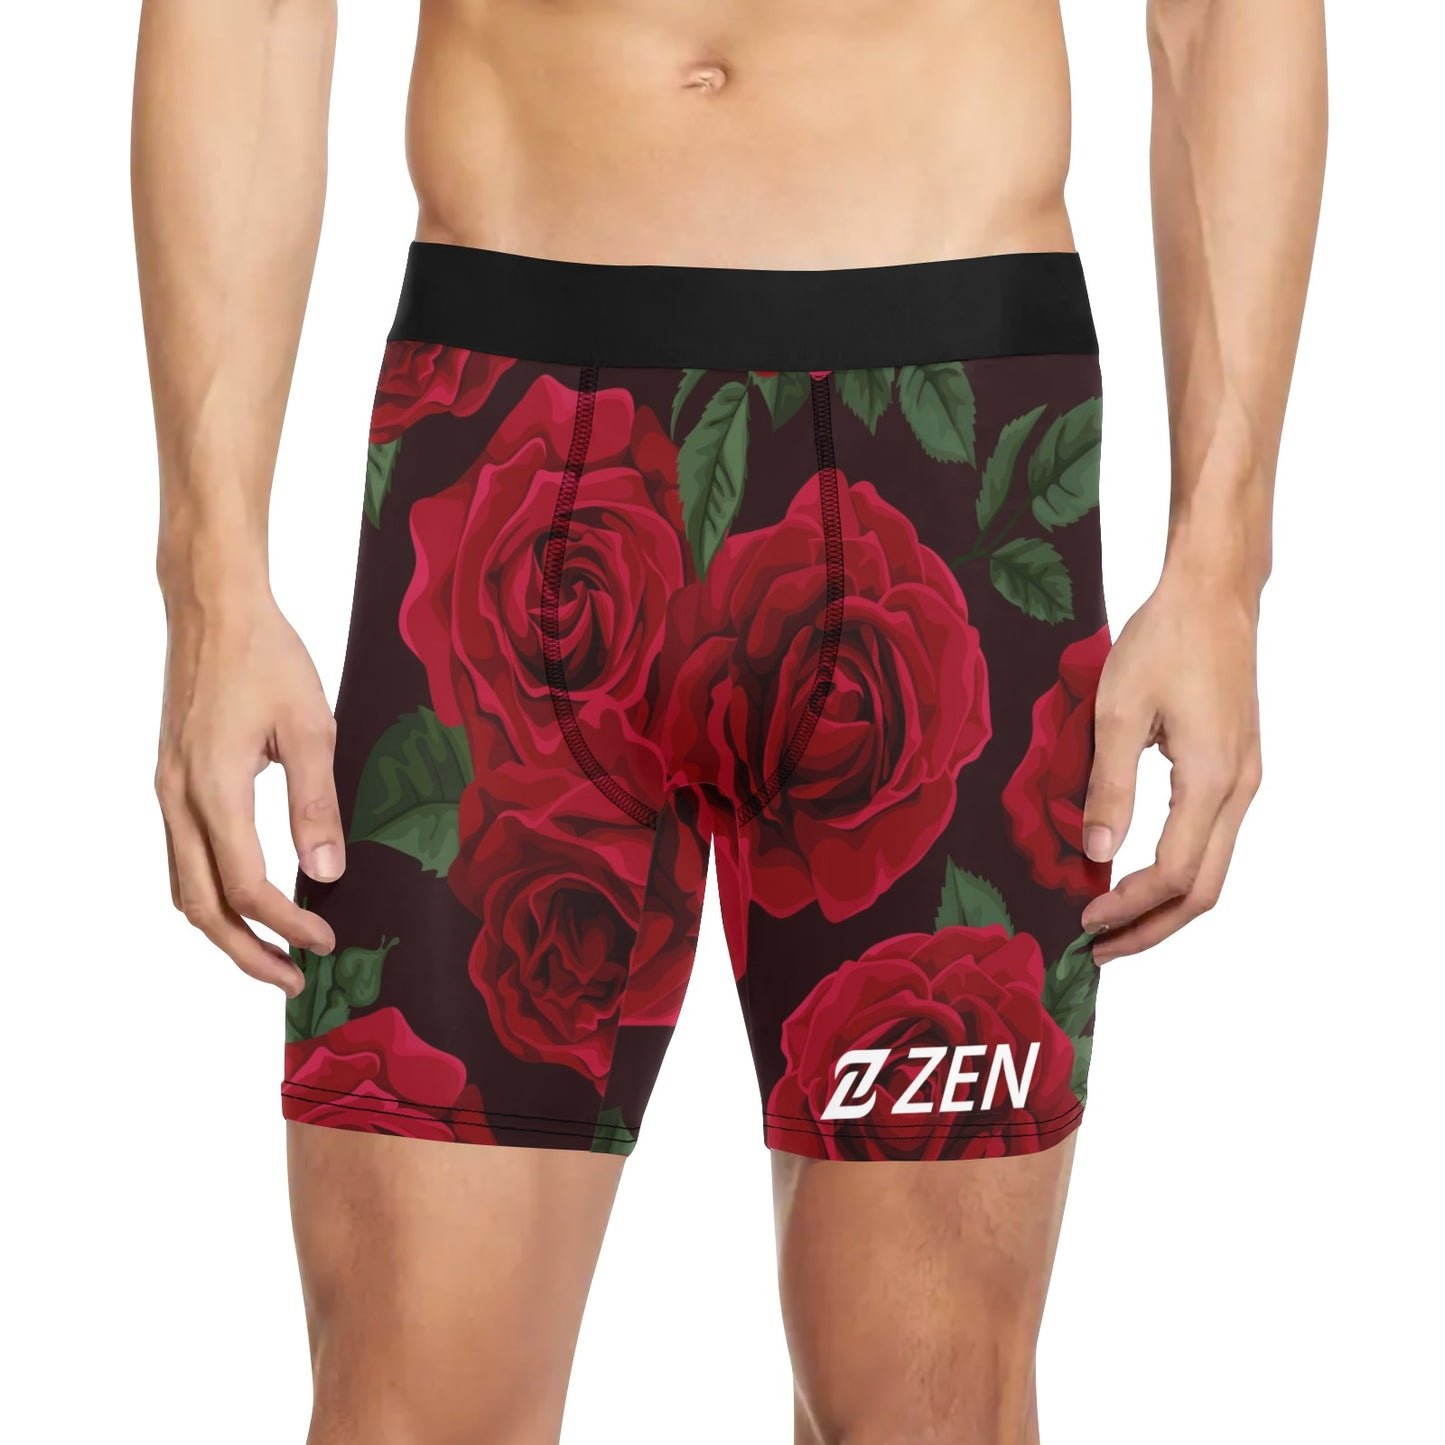 Zen Boxers Long - Roses